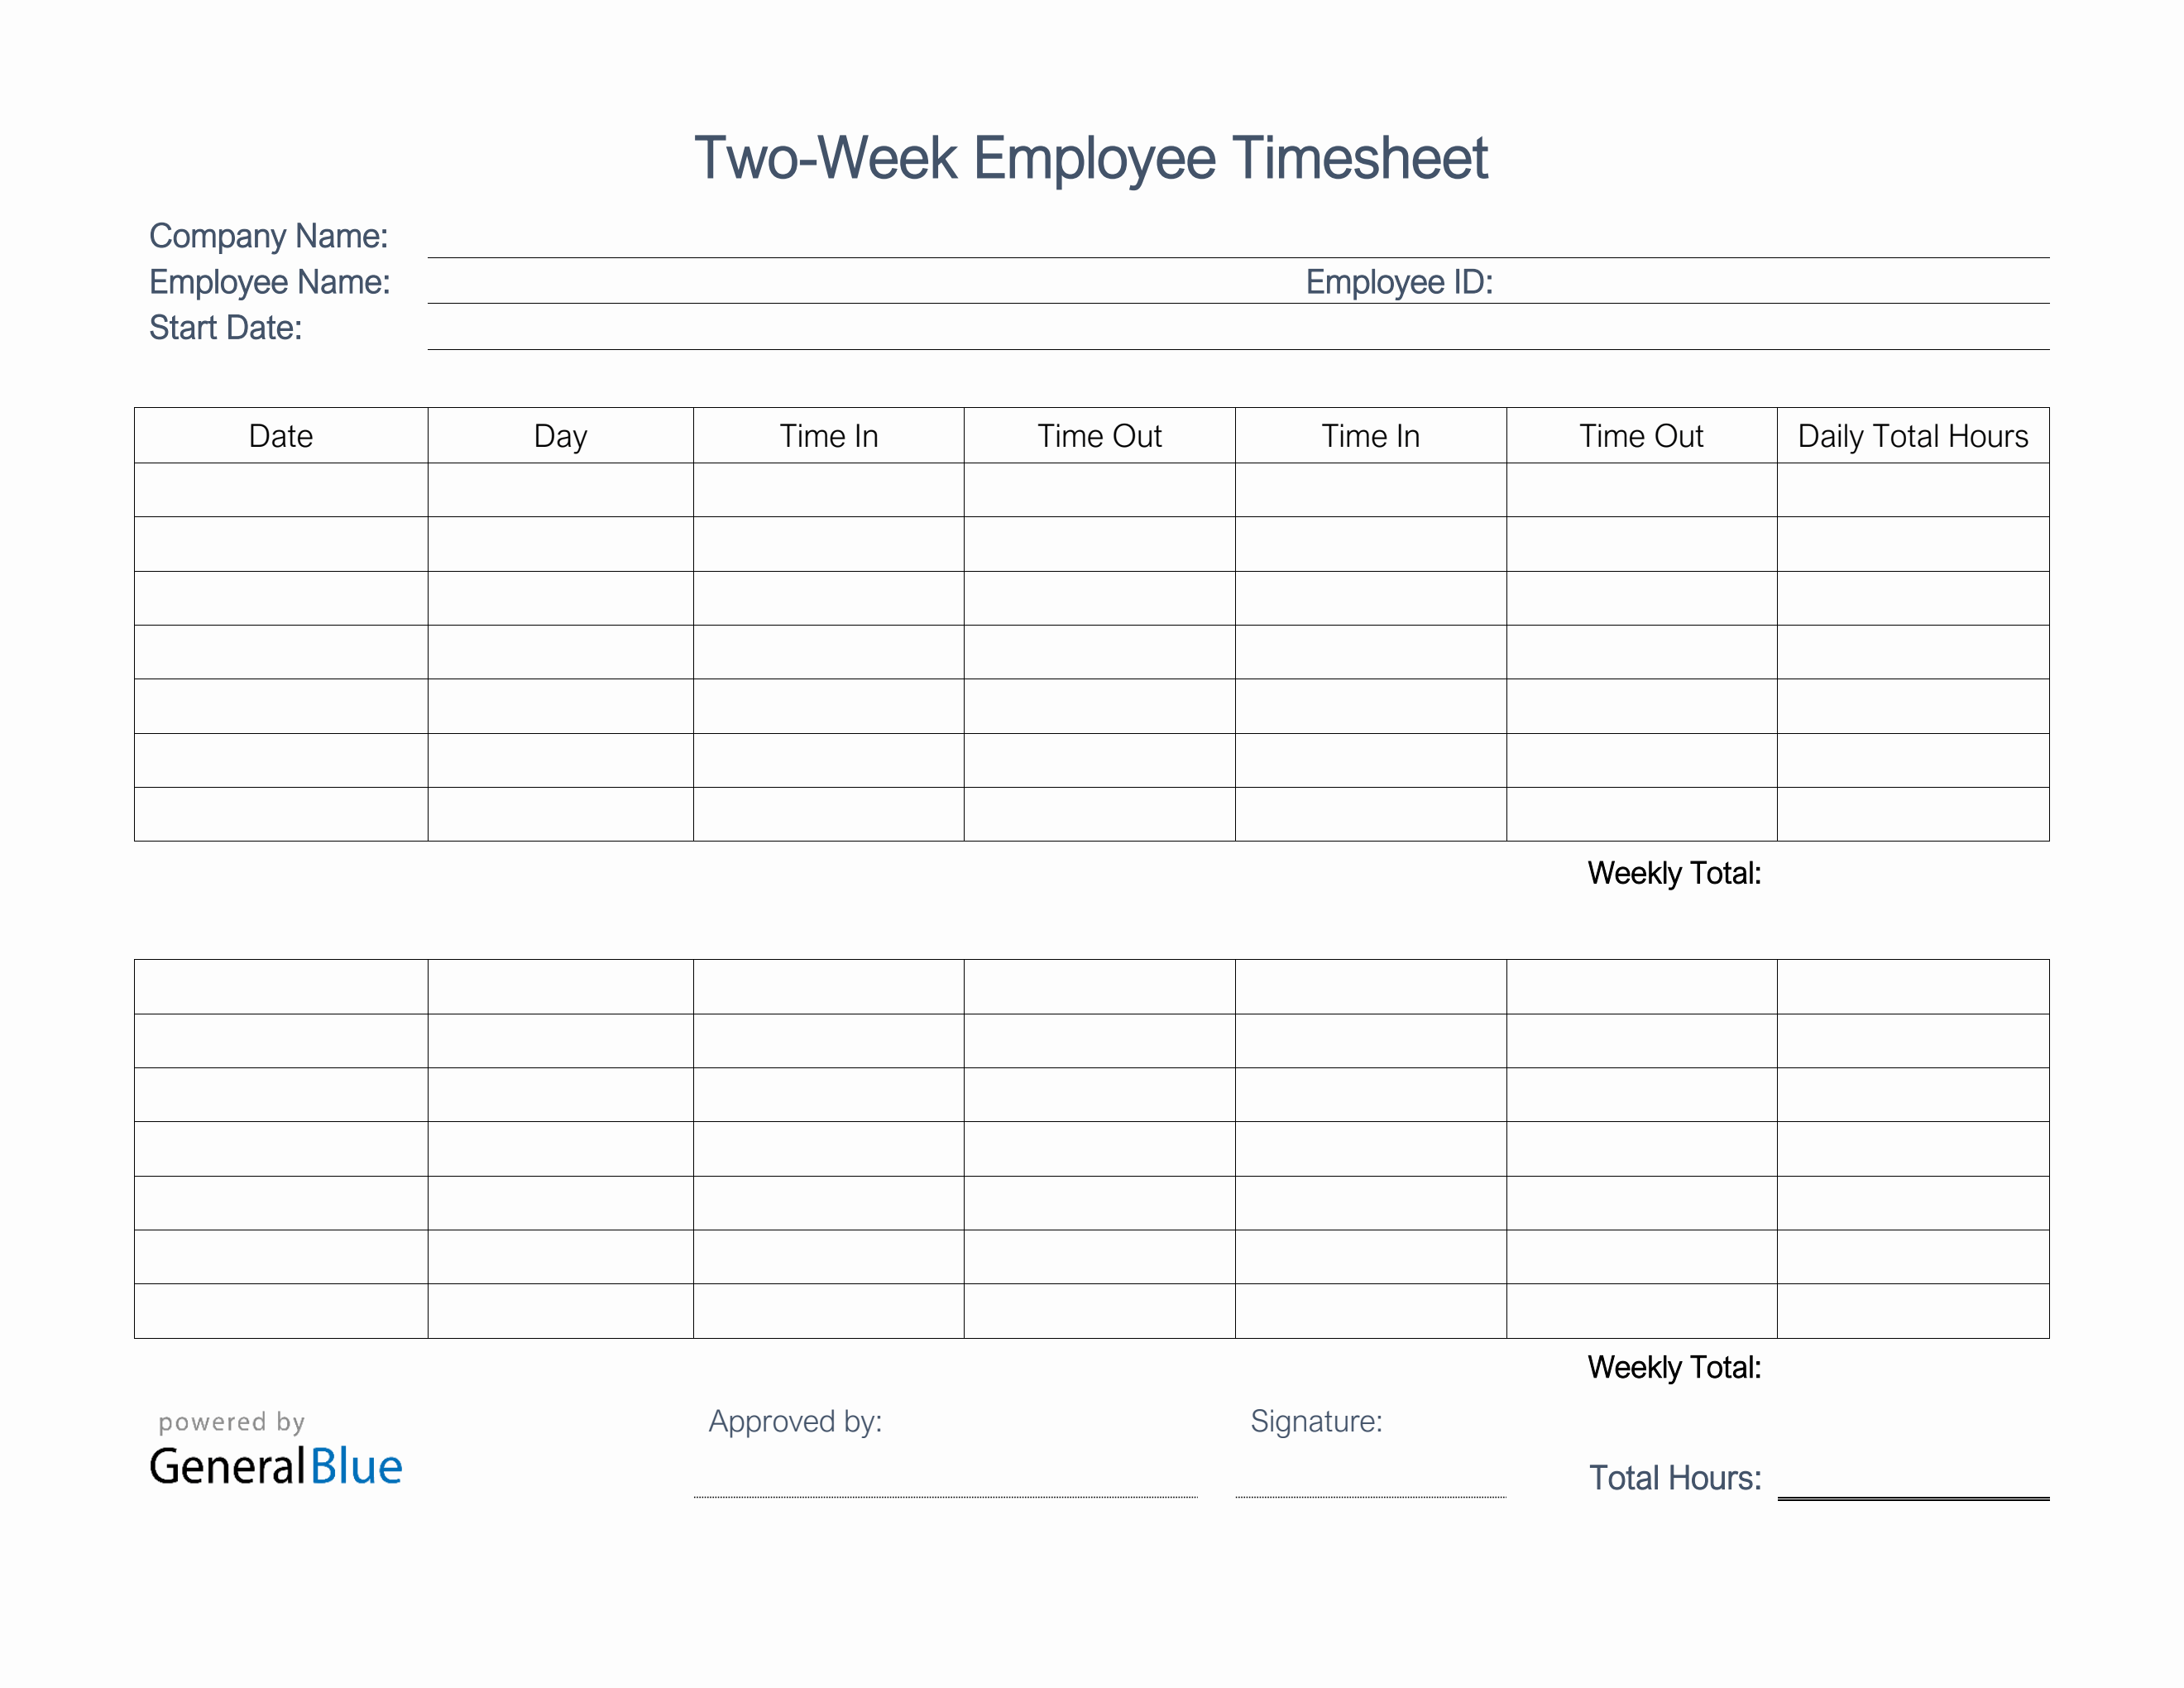 printable-two-week-employee-timesheet-in-word